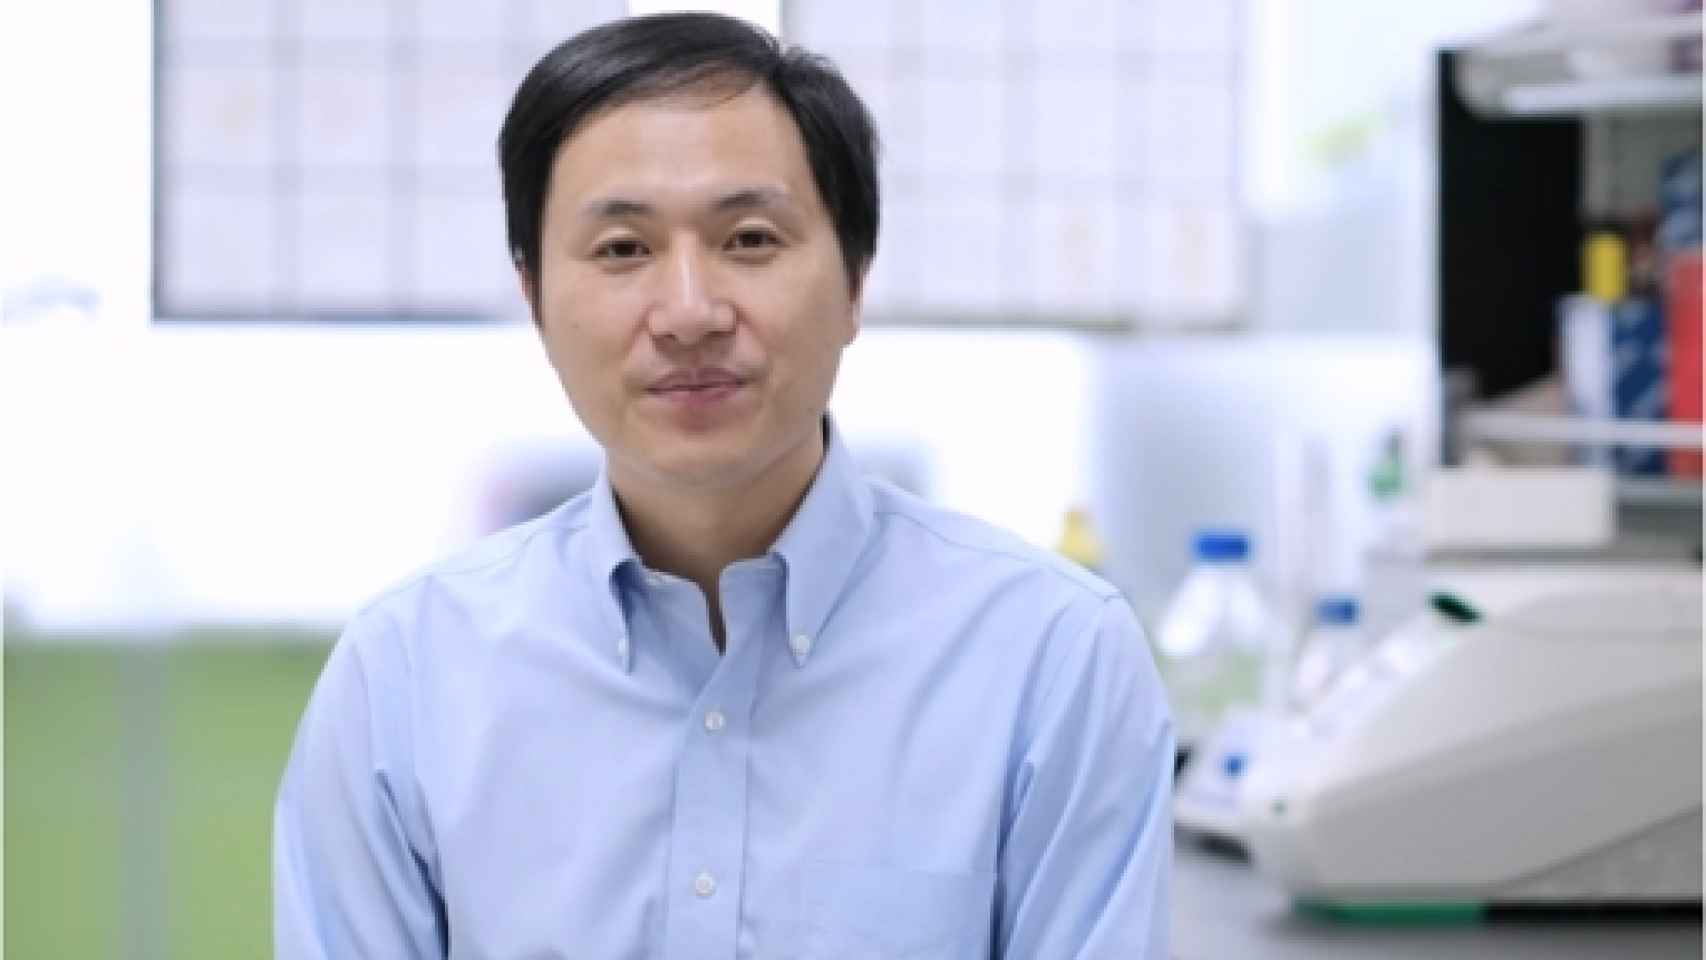 Image: Un científico chino dice haber creado bebés modificados con CRISPR